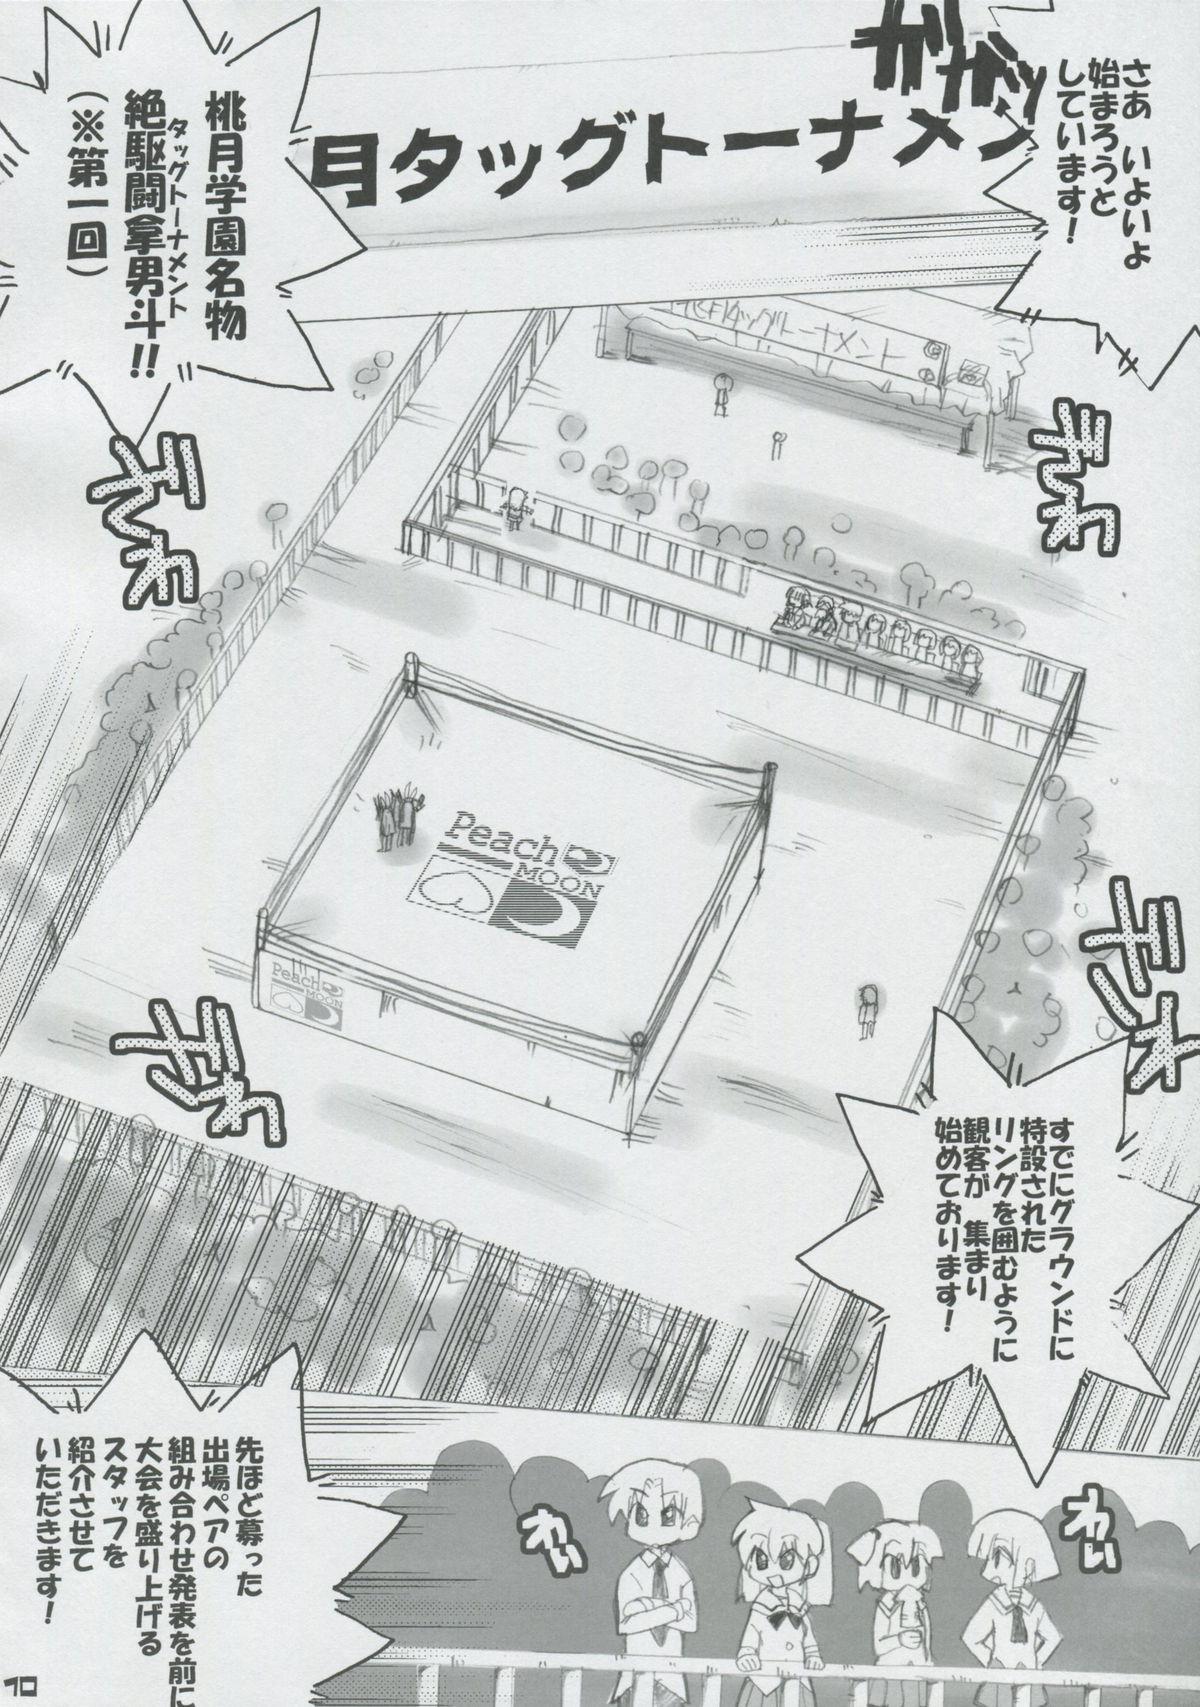 Price Momo Tsuki Monsters 1st-half - Pani poni dash Plug - Page 9